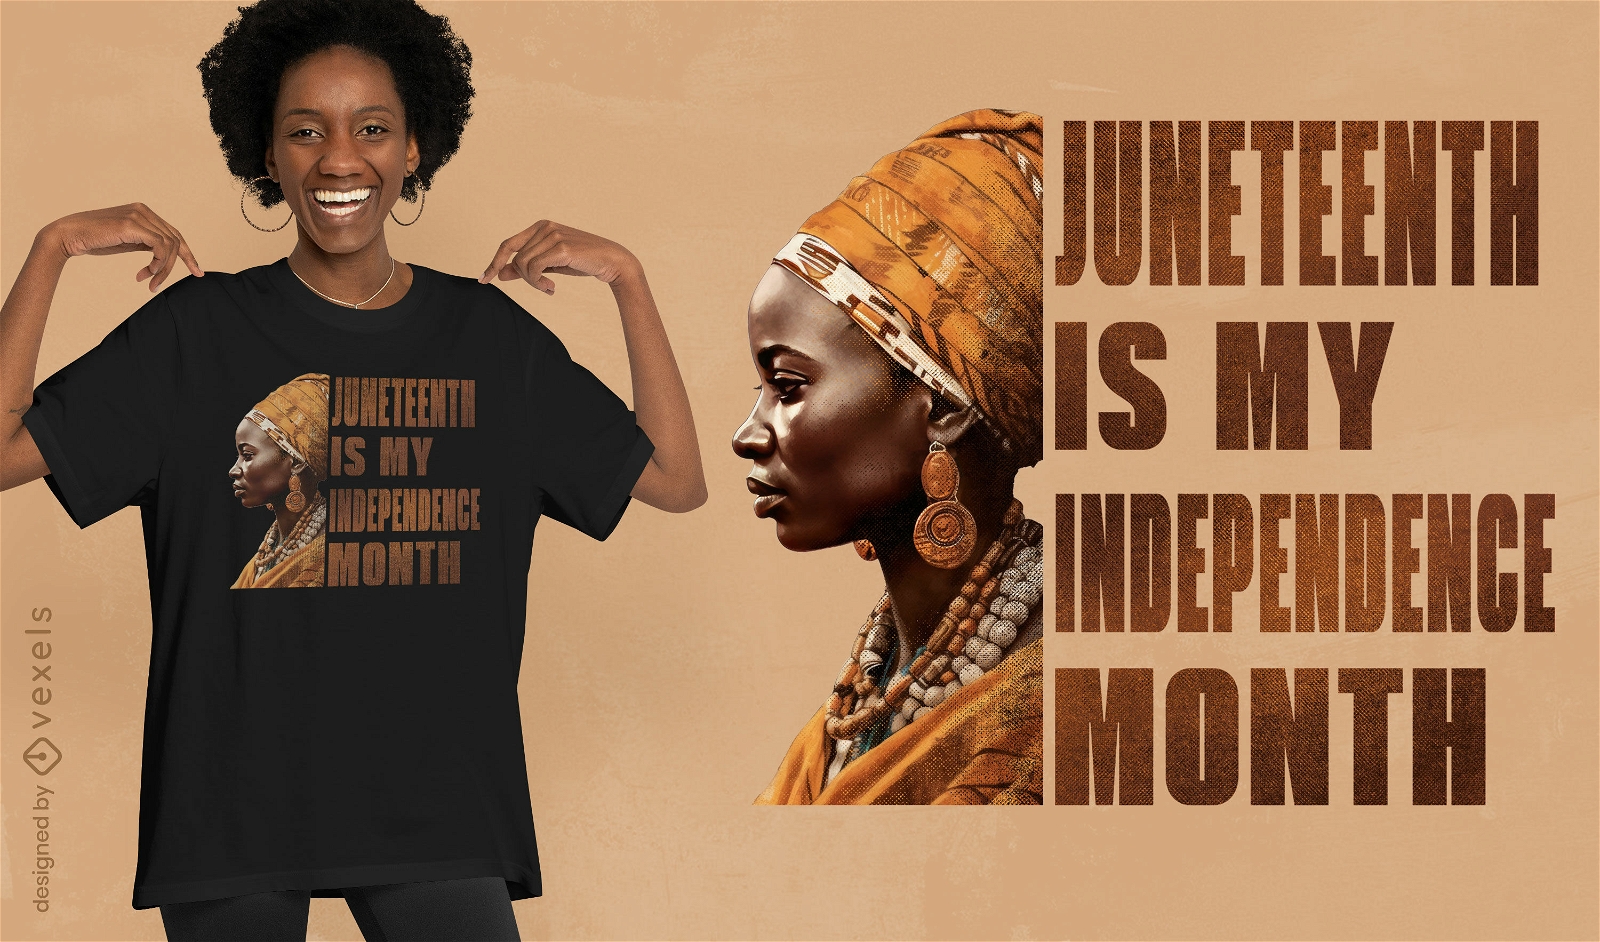 Dise?o de camiseta de celebraci?n de la independencia del 16 de junio.